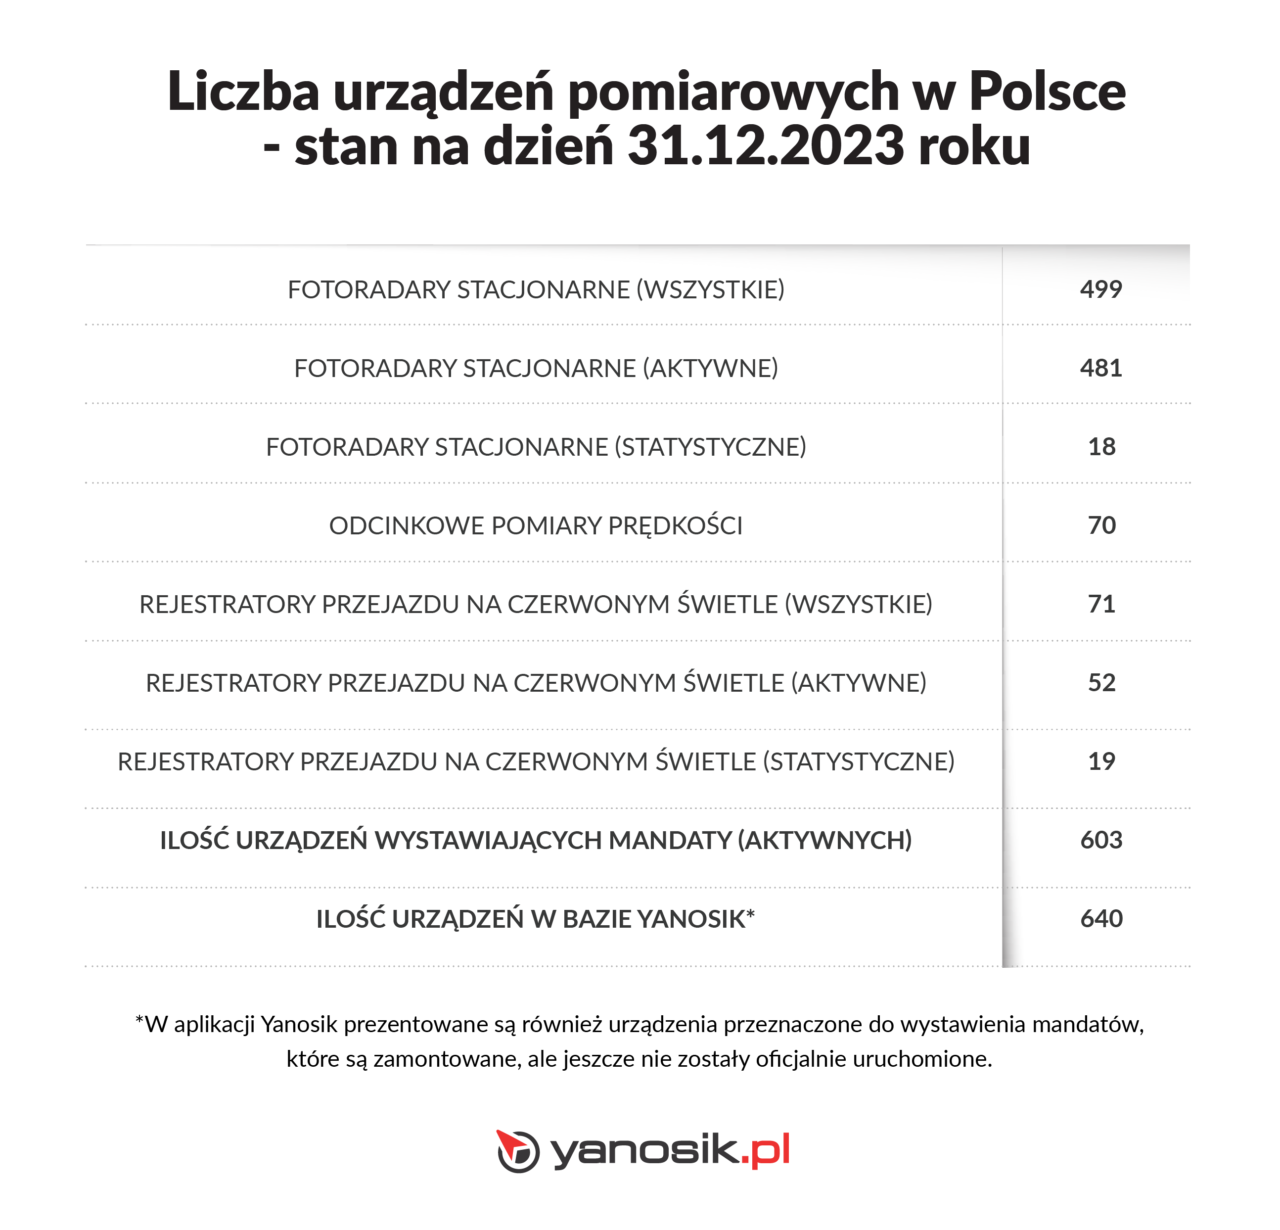 Infografika przedstawiająca liczbę urządzeń pomiarowych w Polsce ze stanem na dzień 31.12.2023 r., w tym fotoradary stacjonarne, odcinkowe pomiary prędkości oraz rejestratory przejazdu na czerwonym świetle, z podziałem na urządzenia aktywne, statystyczne i wszystkie. Na dole informacja o liczbie urządzeń w bazie Yanosik oraz przypis wyjaśniający, że niektóre urządzenia są zainstalowane, ale nieaktywne.